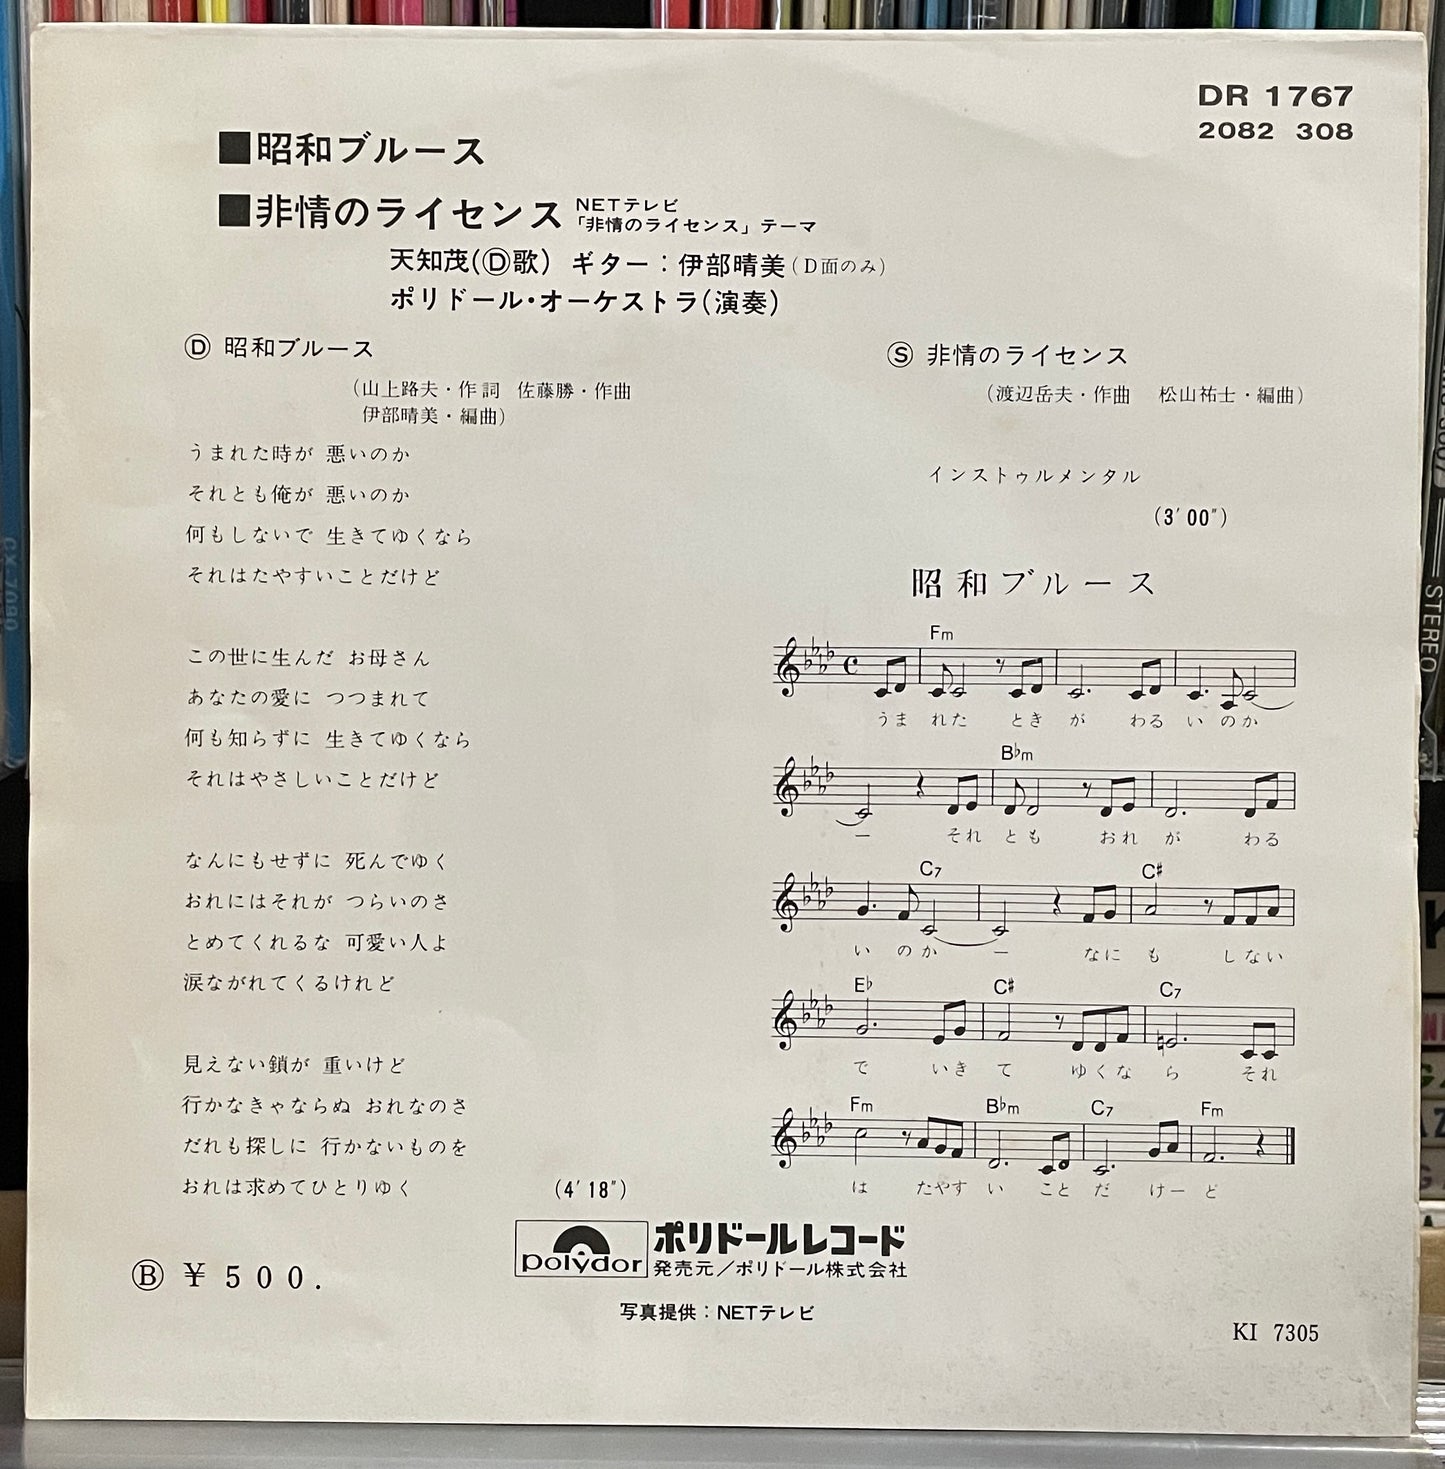 天知茂 “昭和ブルース / 非情のライセンス” OST (1973)